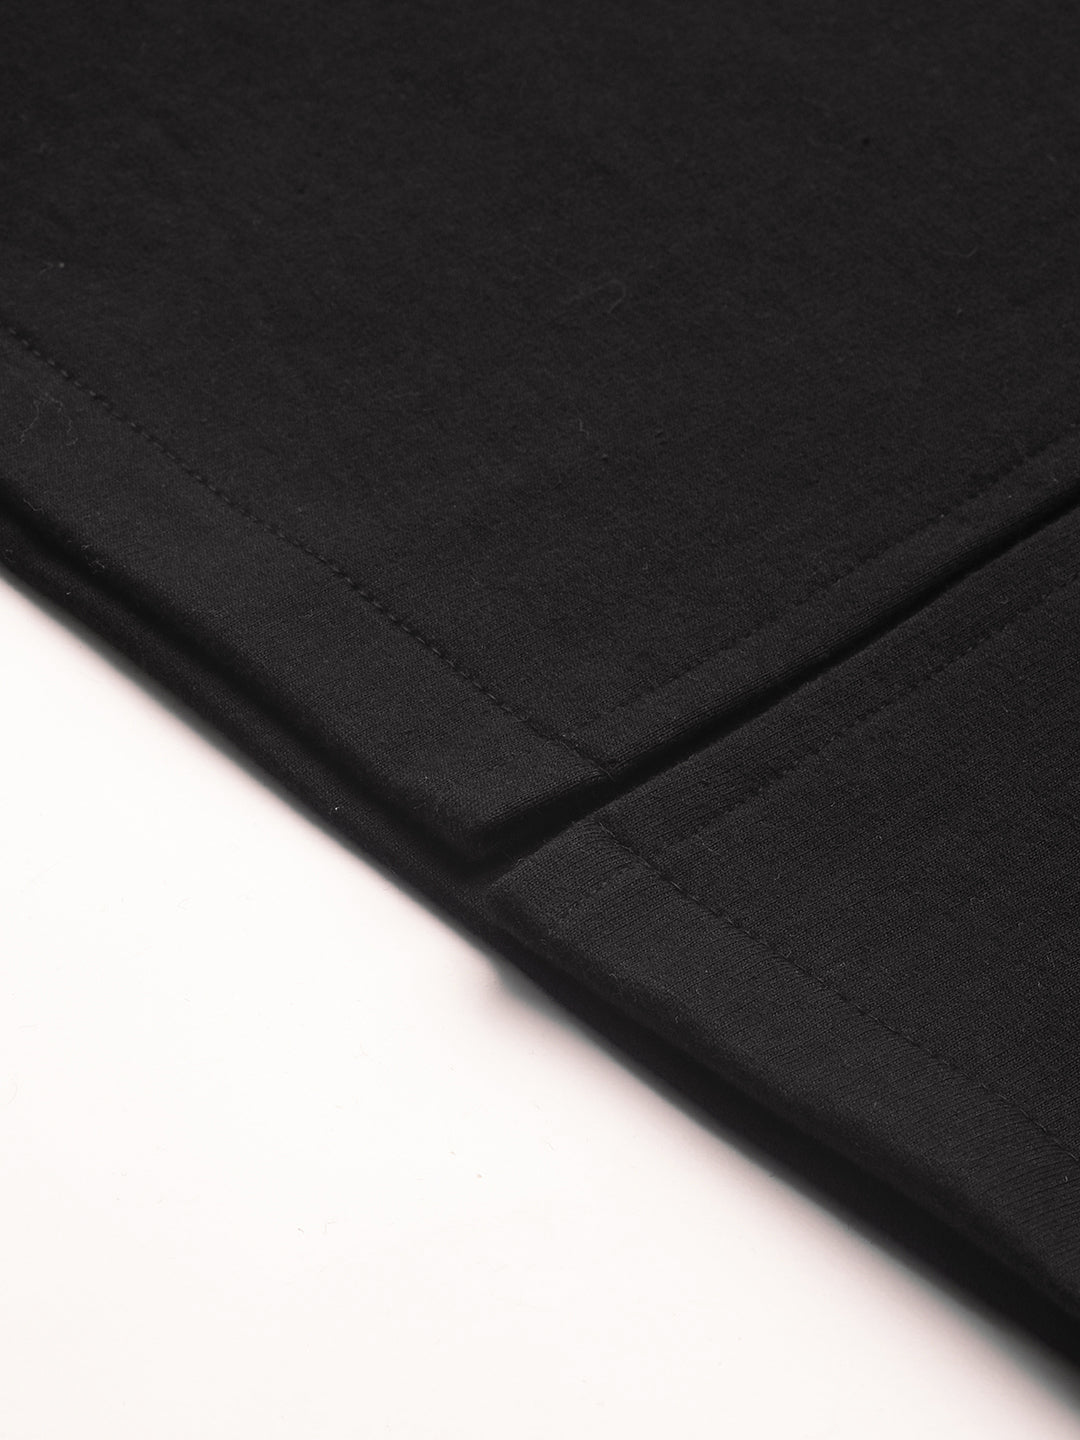 Solid black fleece long skirt